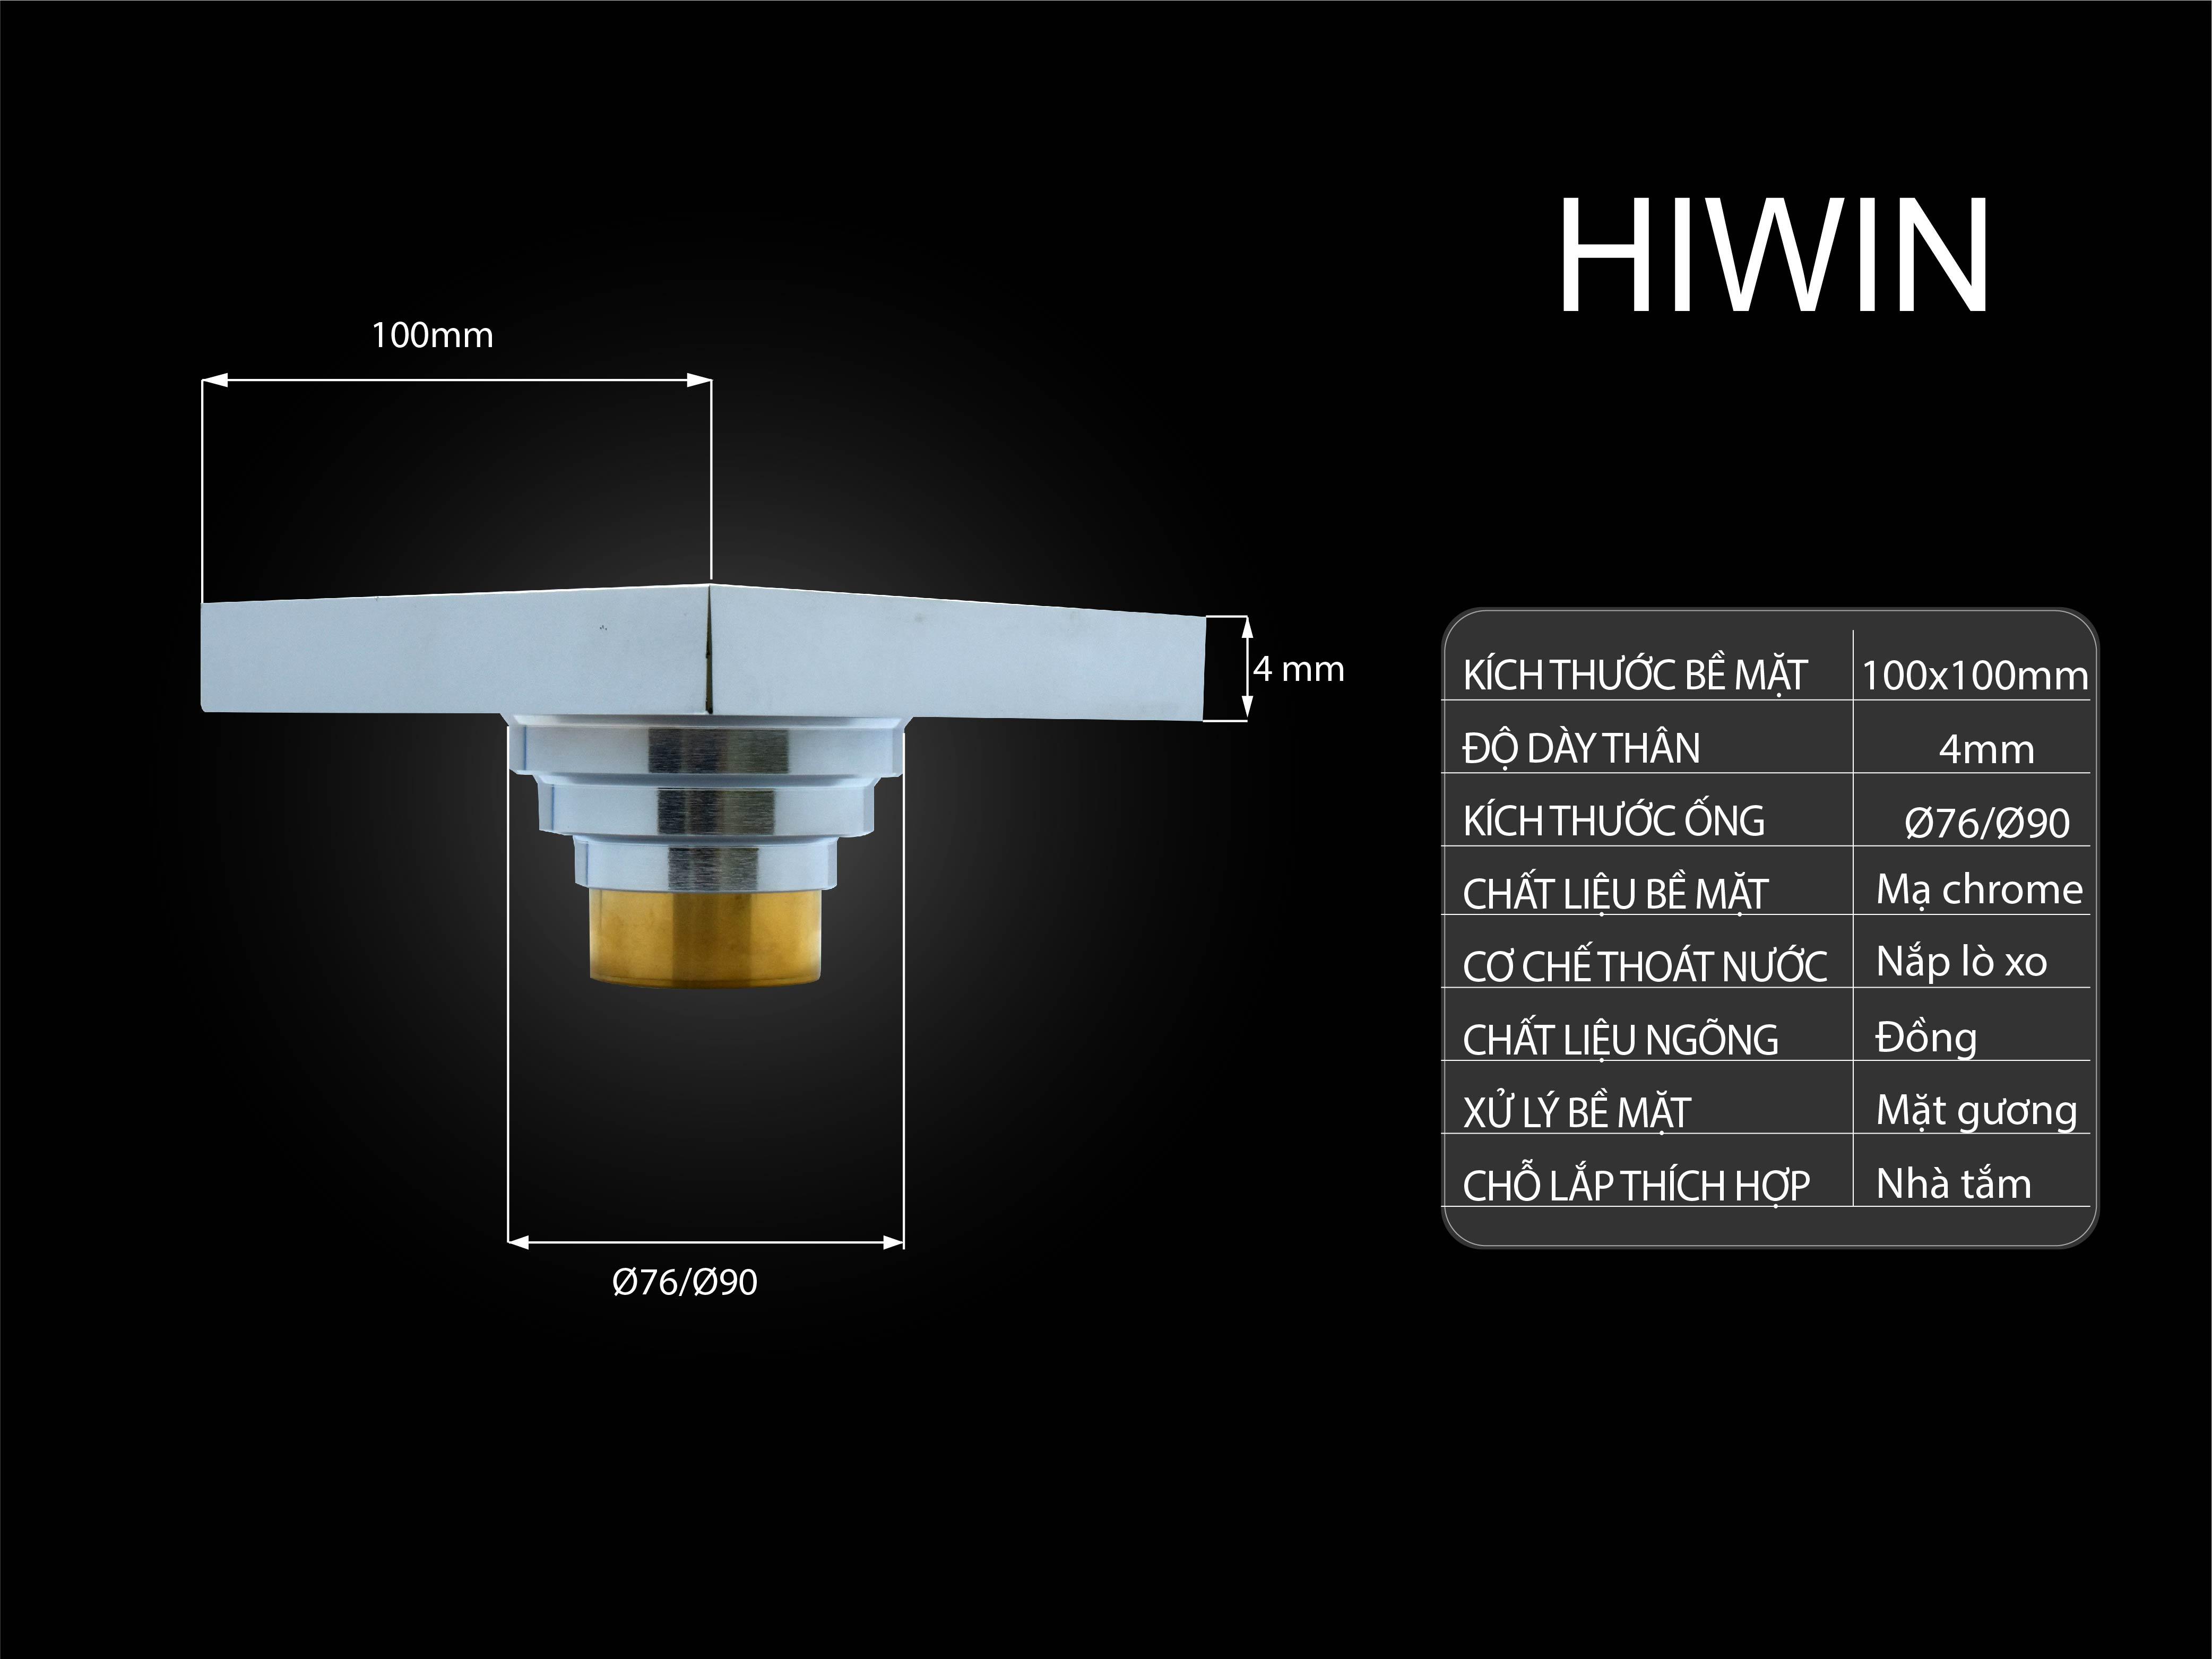 Thông số ga thoát sàn cao cấp Hiwin FD-T11